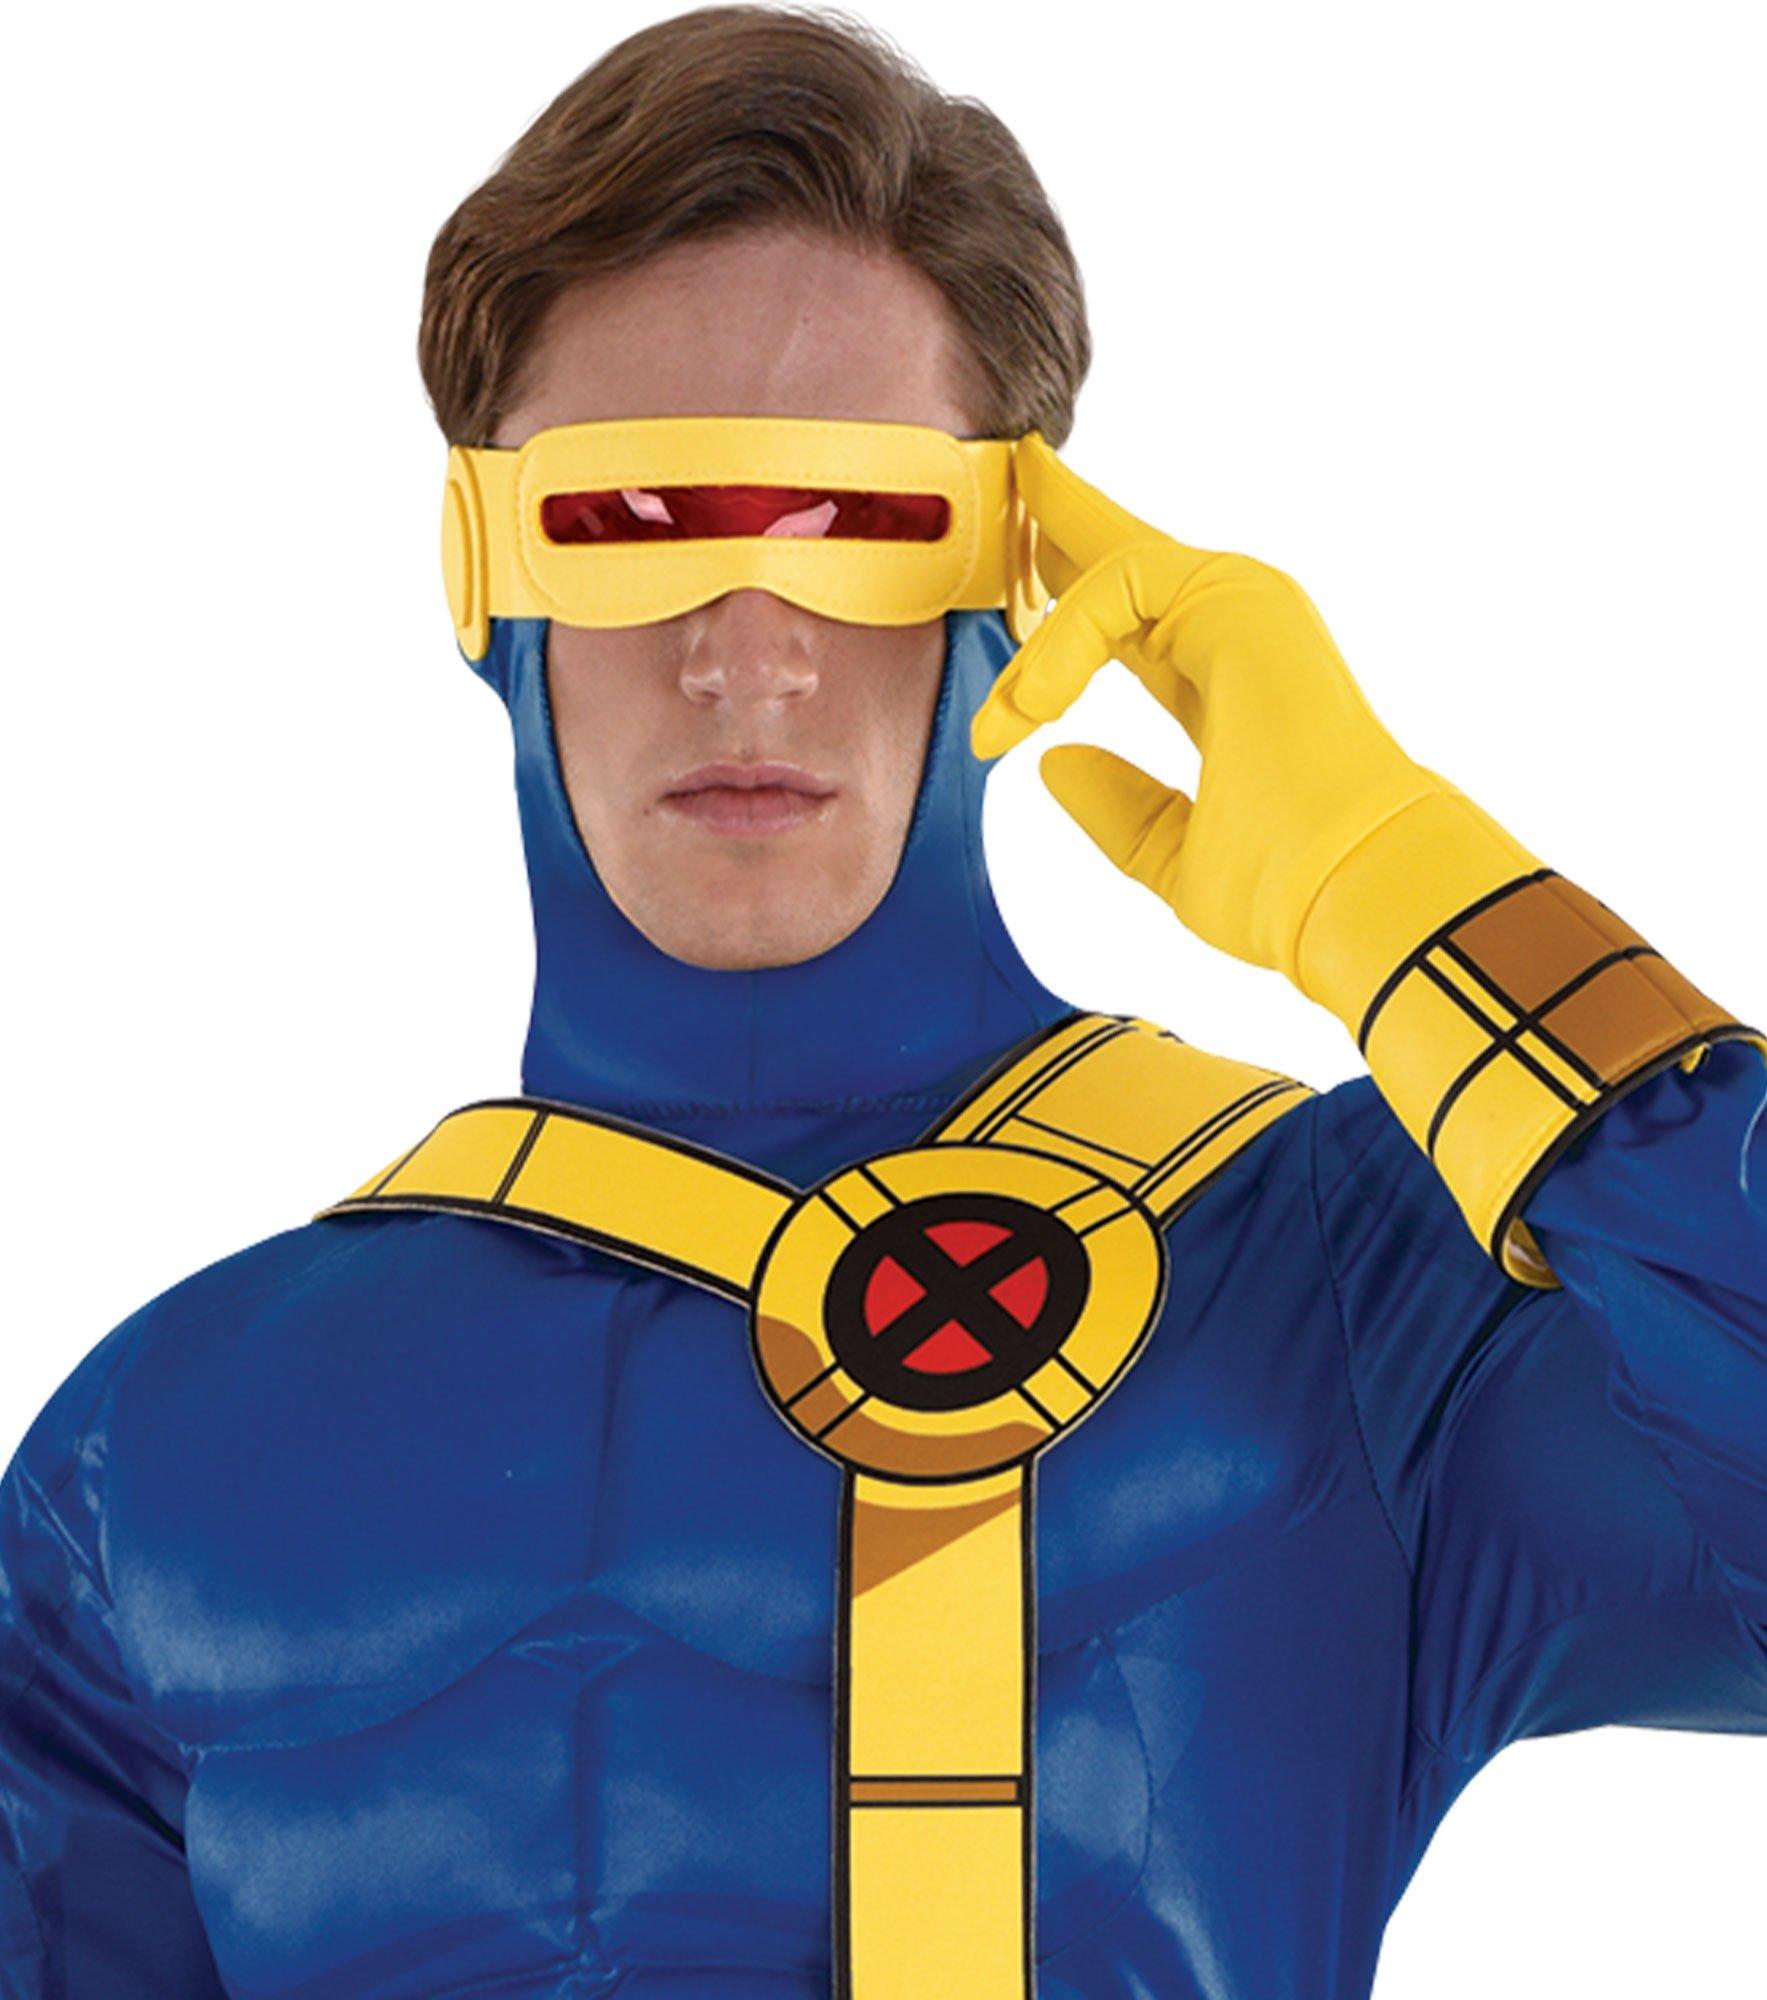 cyclops x men movie costume